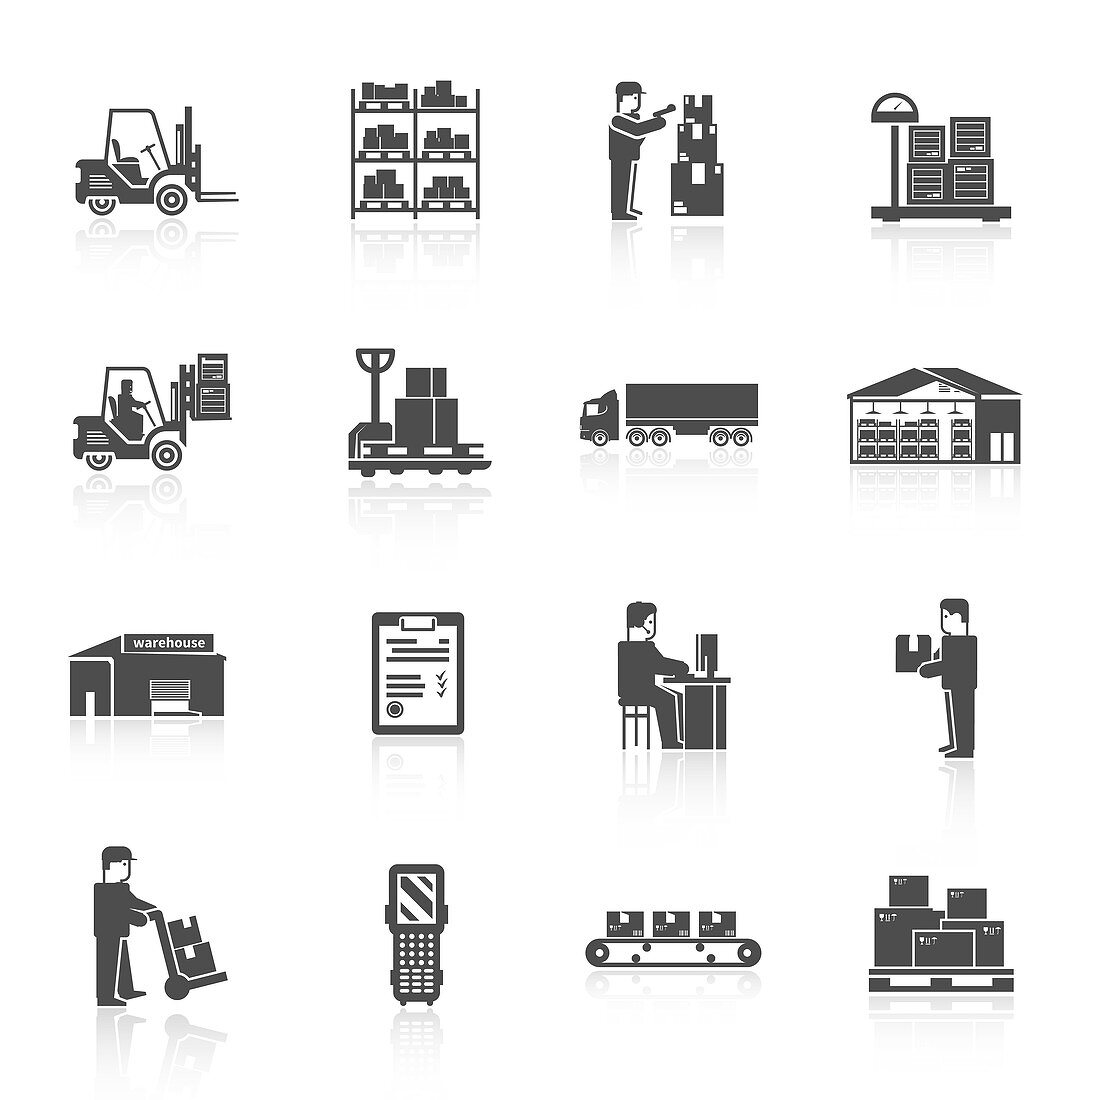 Warehouse icons, illustration